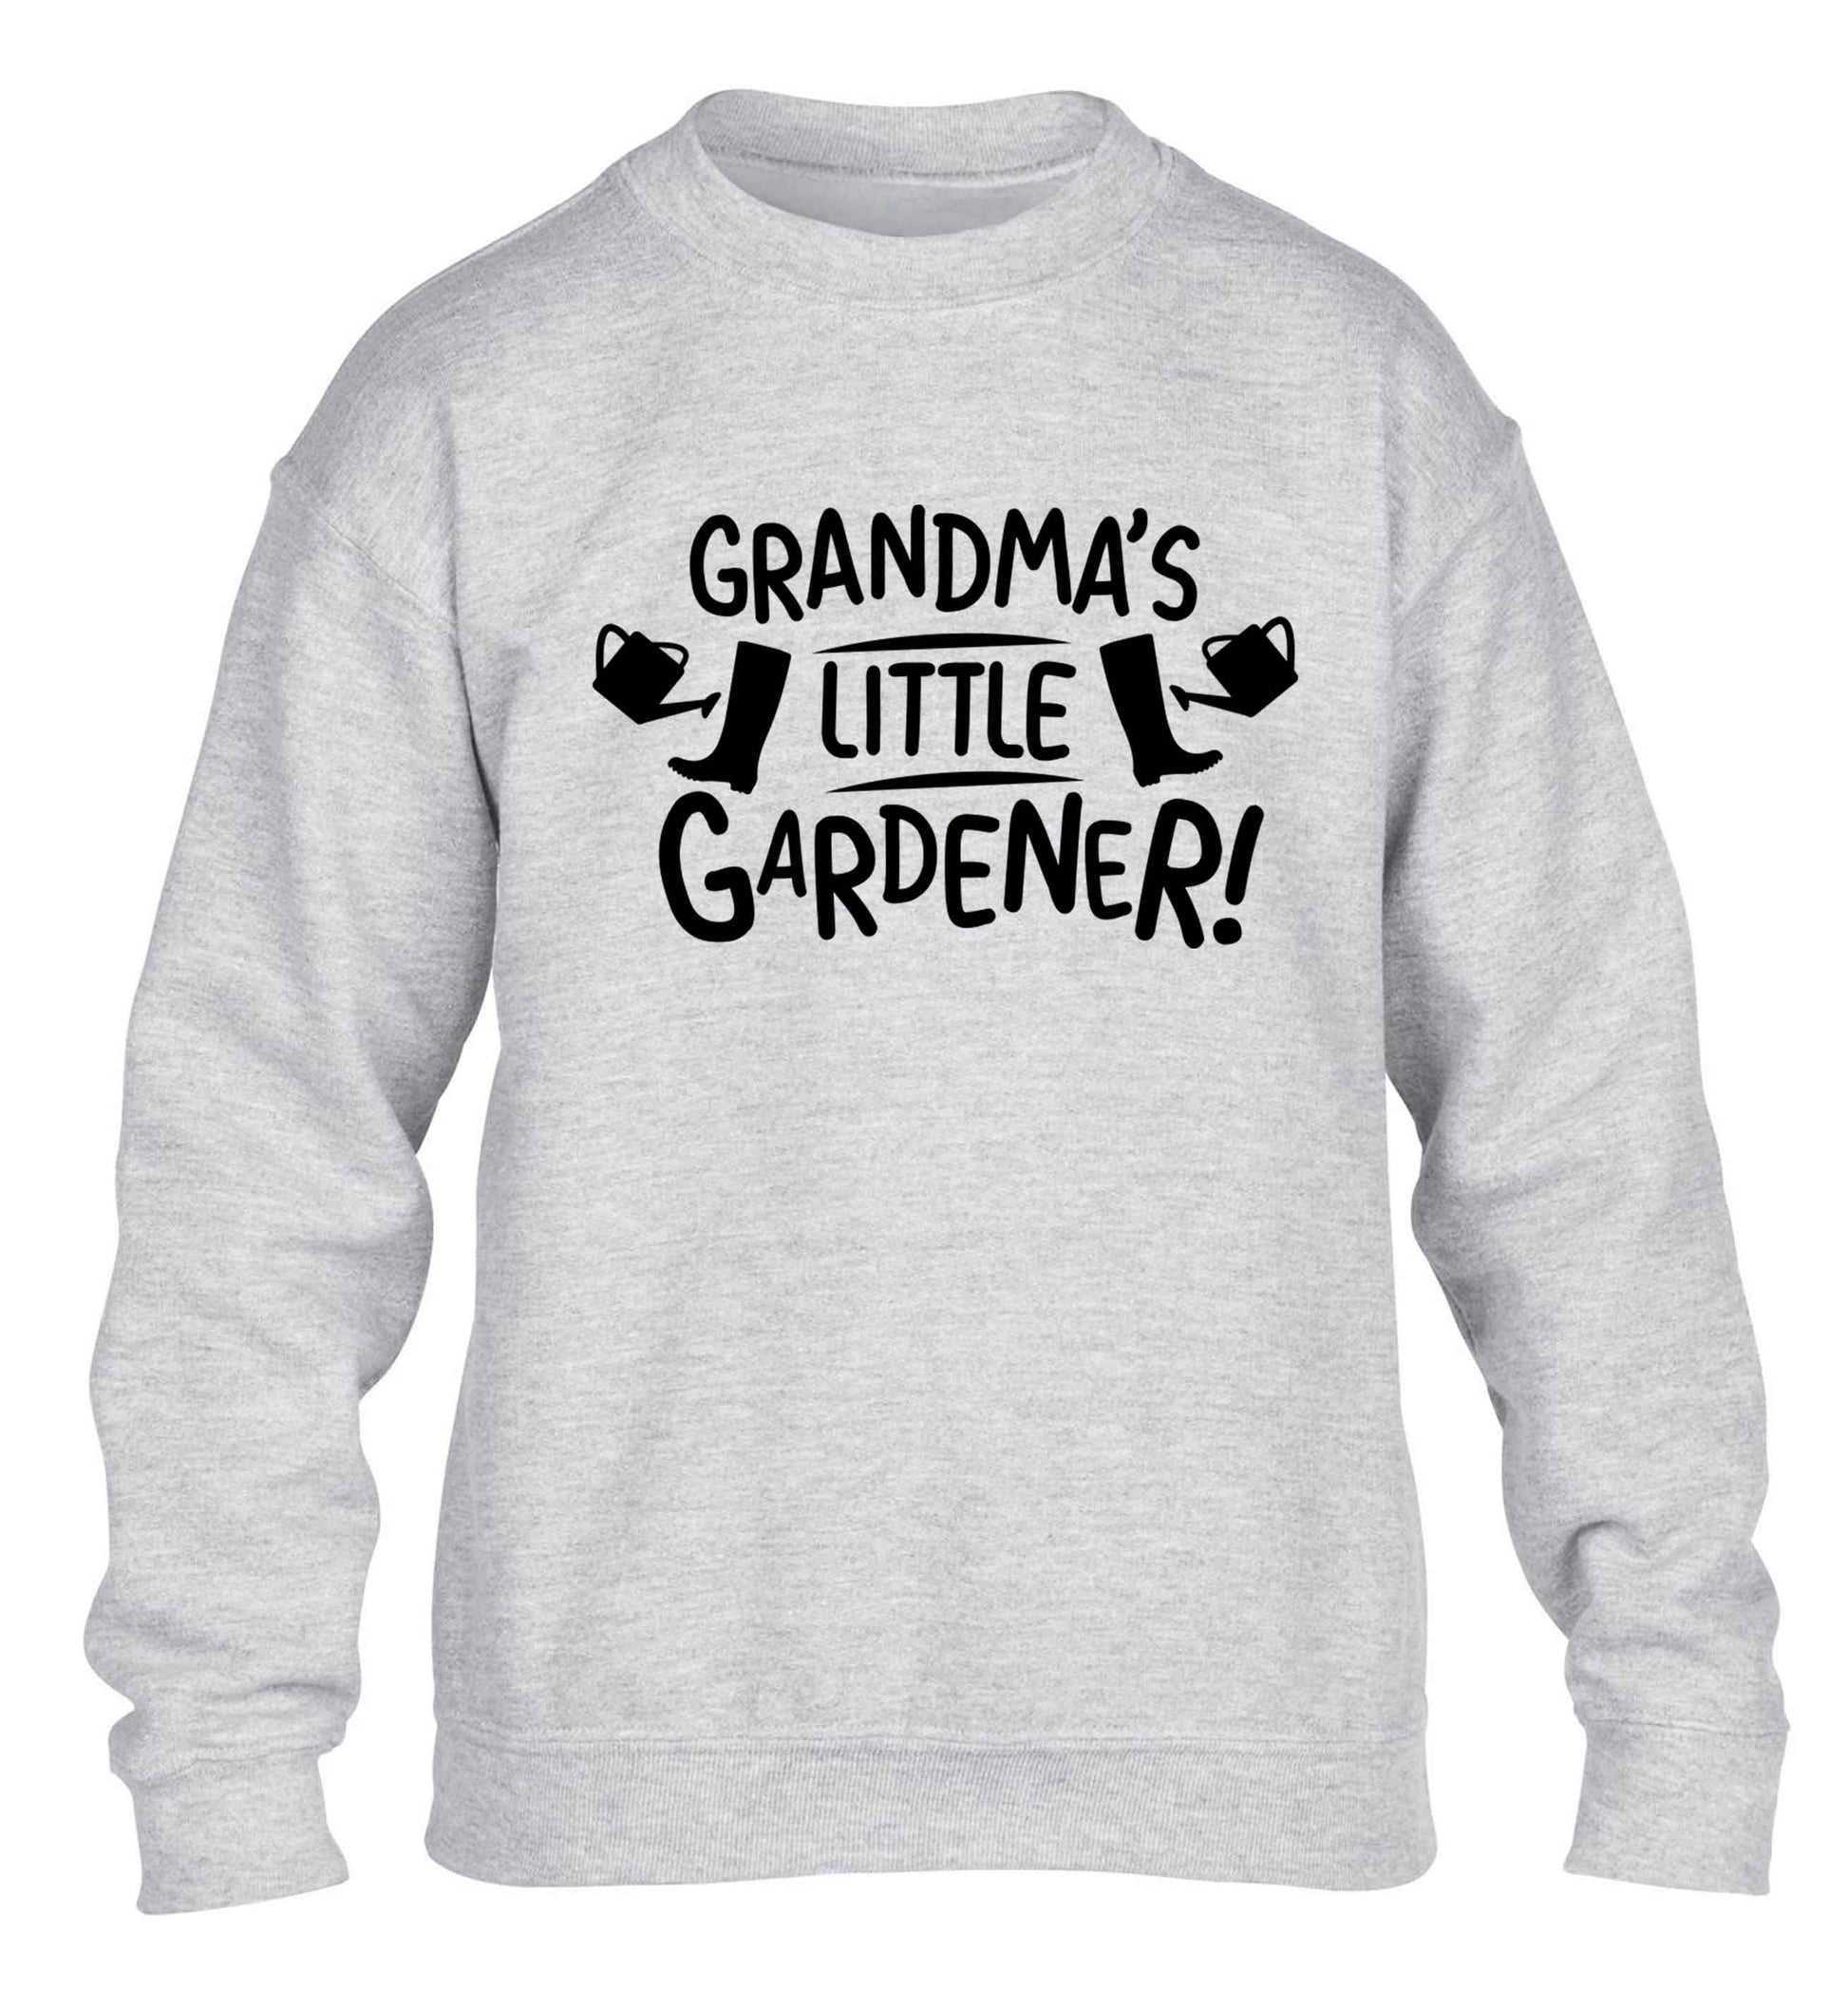 Grandma's little gardener children's grey sweater 12-13 Years